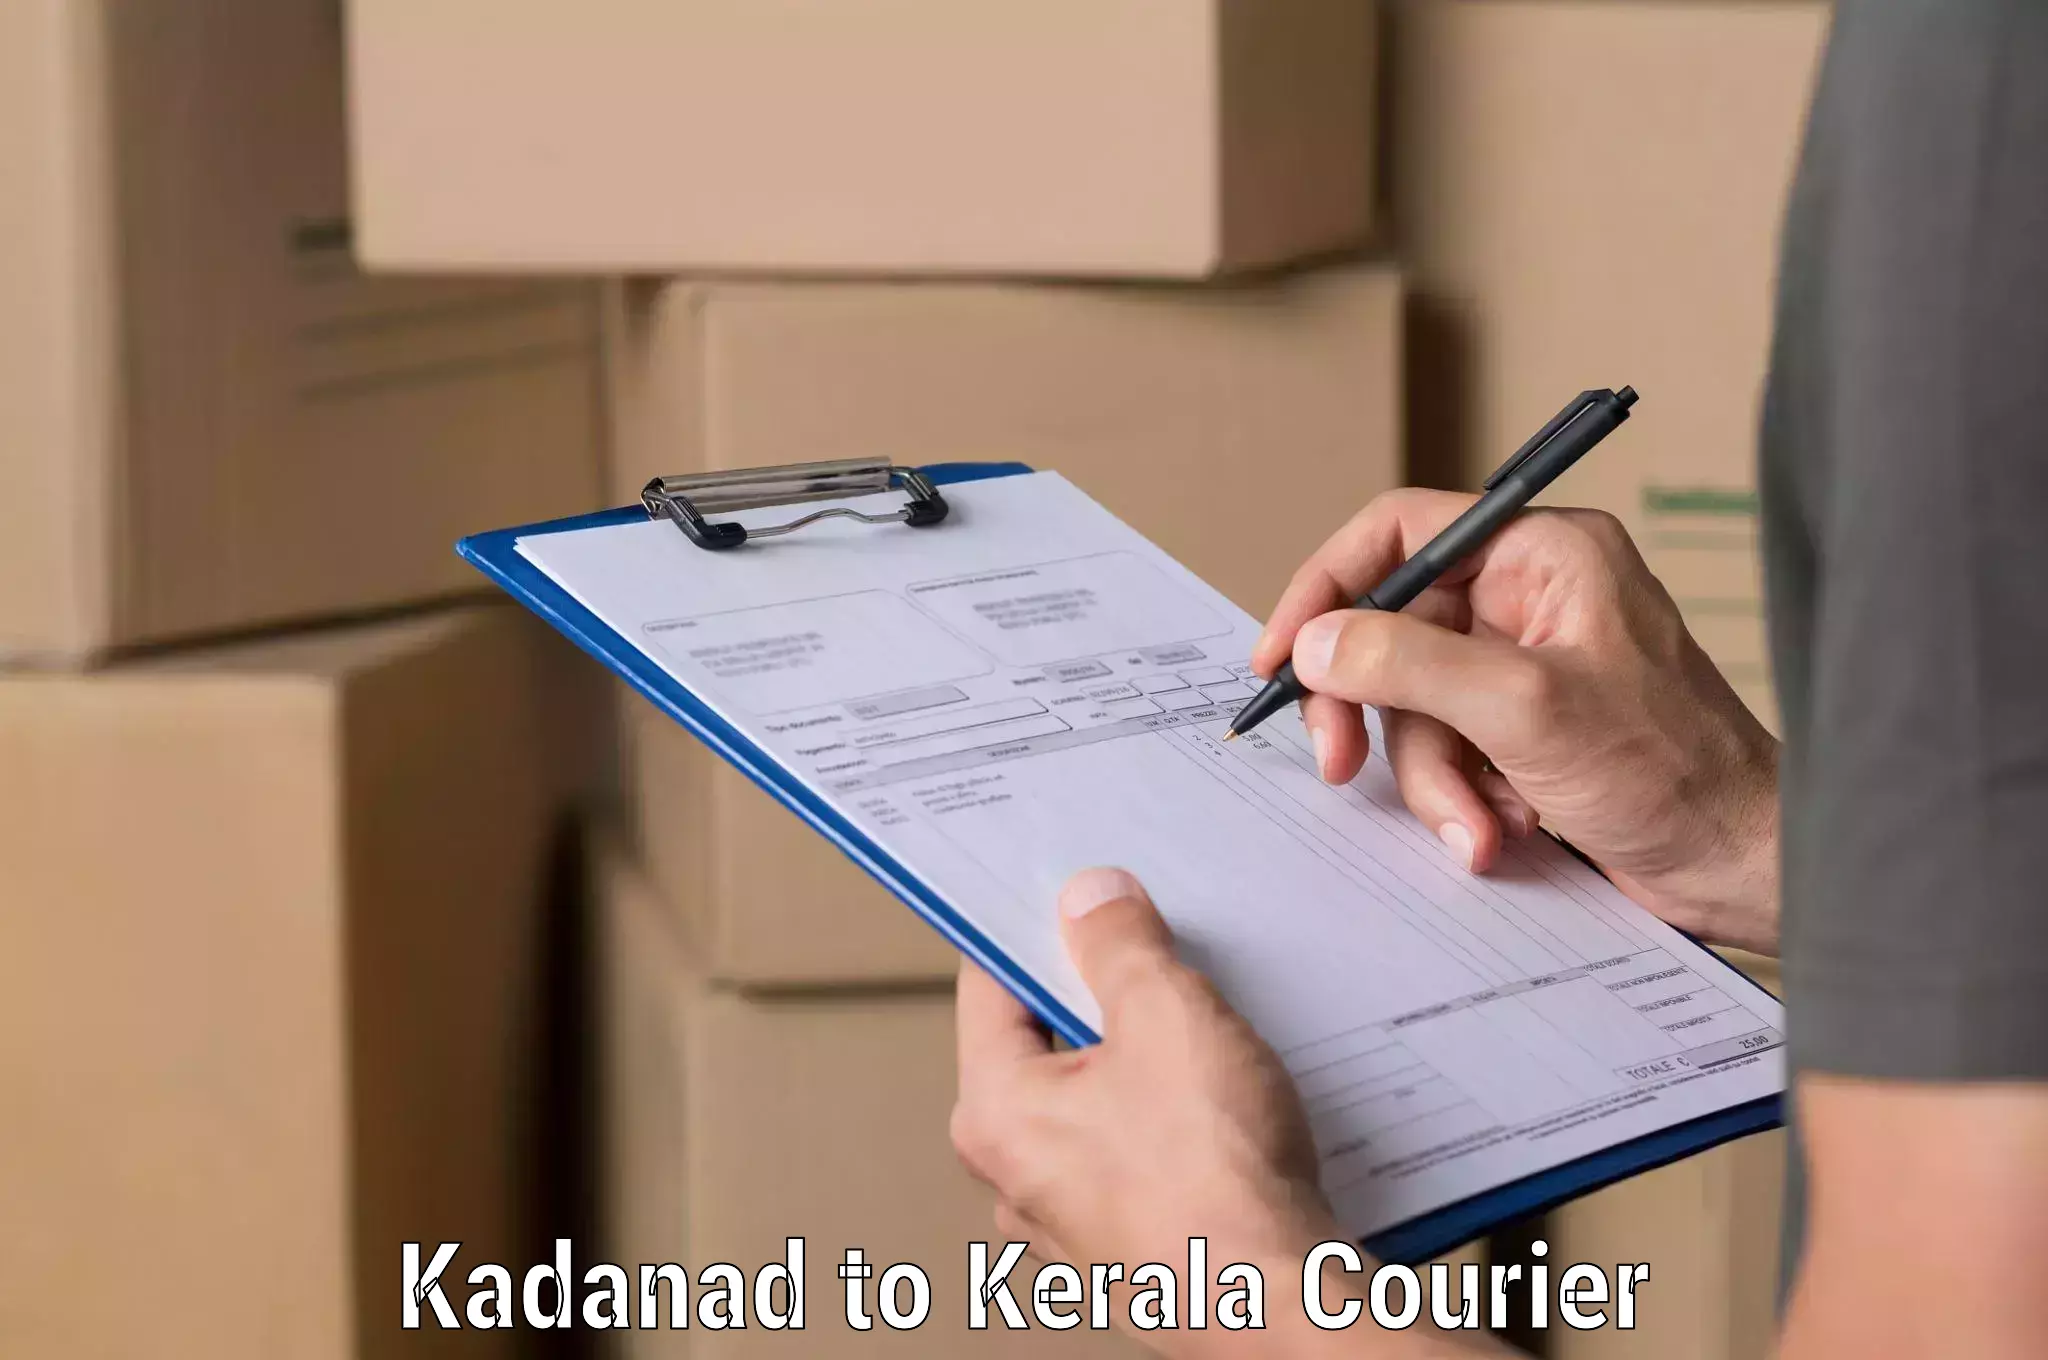 Global shipping networks Kadanad to Koothattukulam